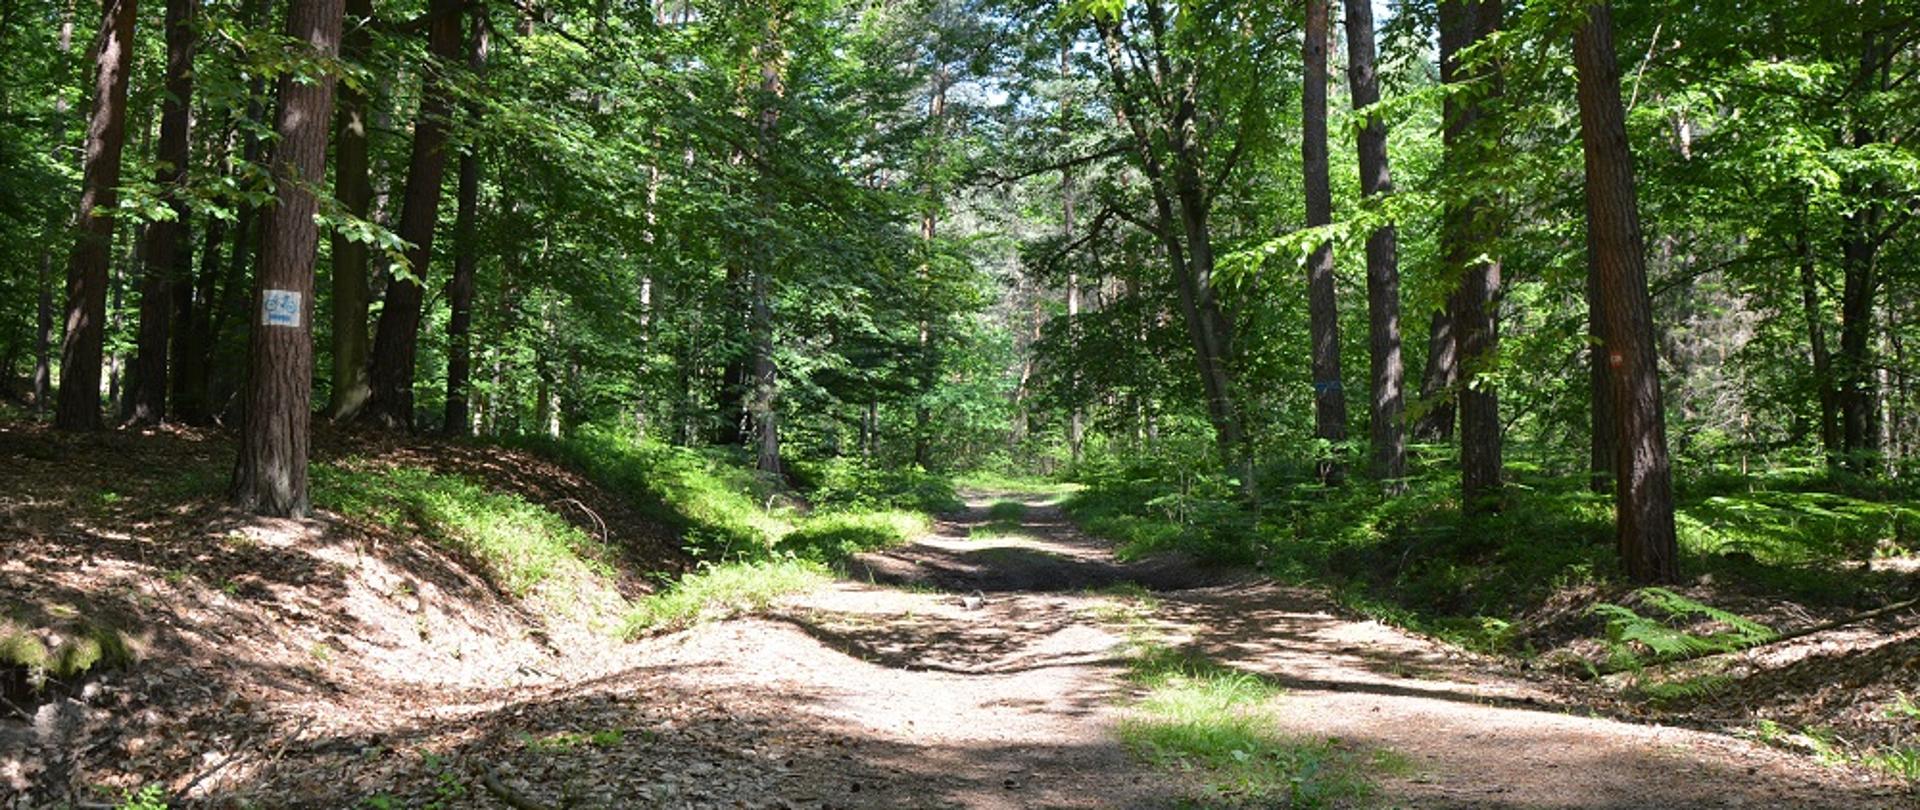 ścieżka w lesie, po bokach zielone drzewa